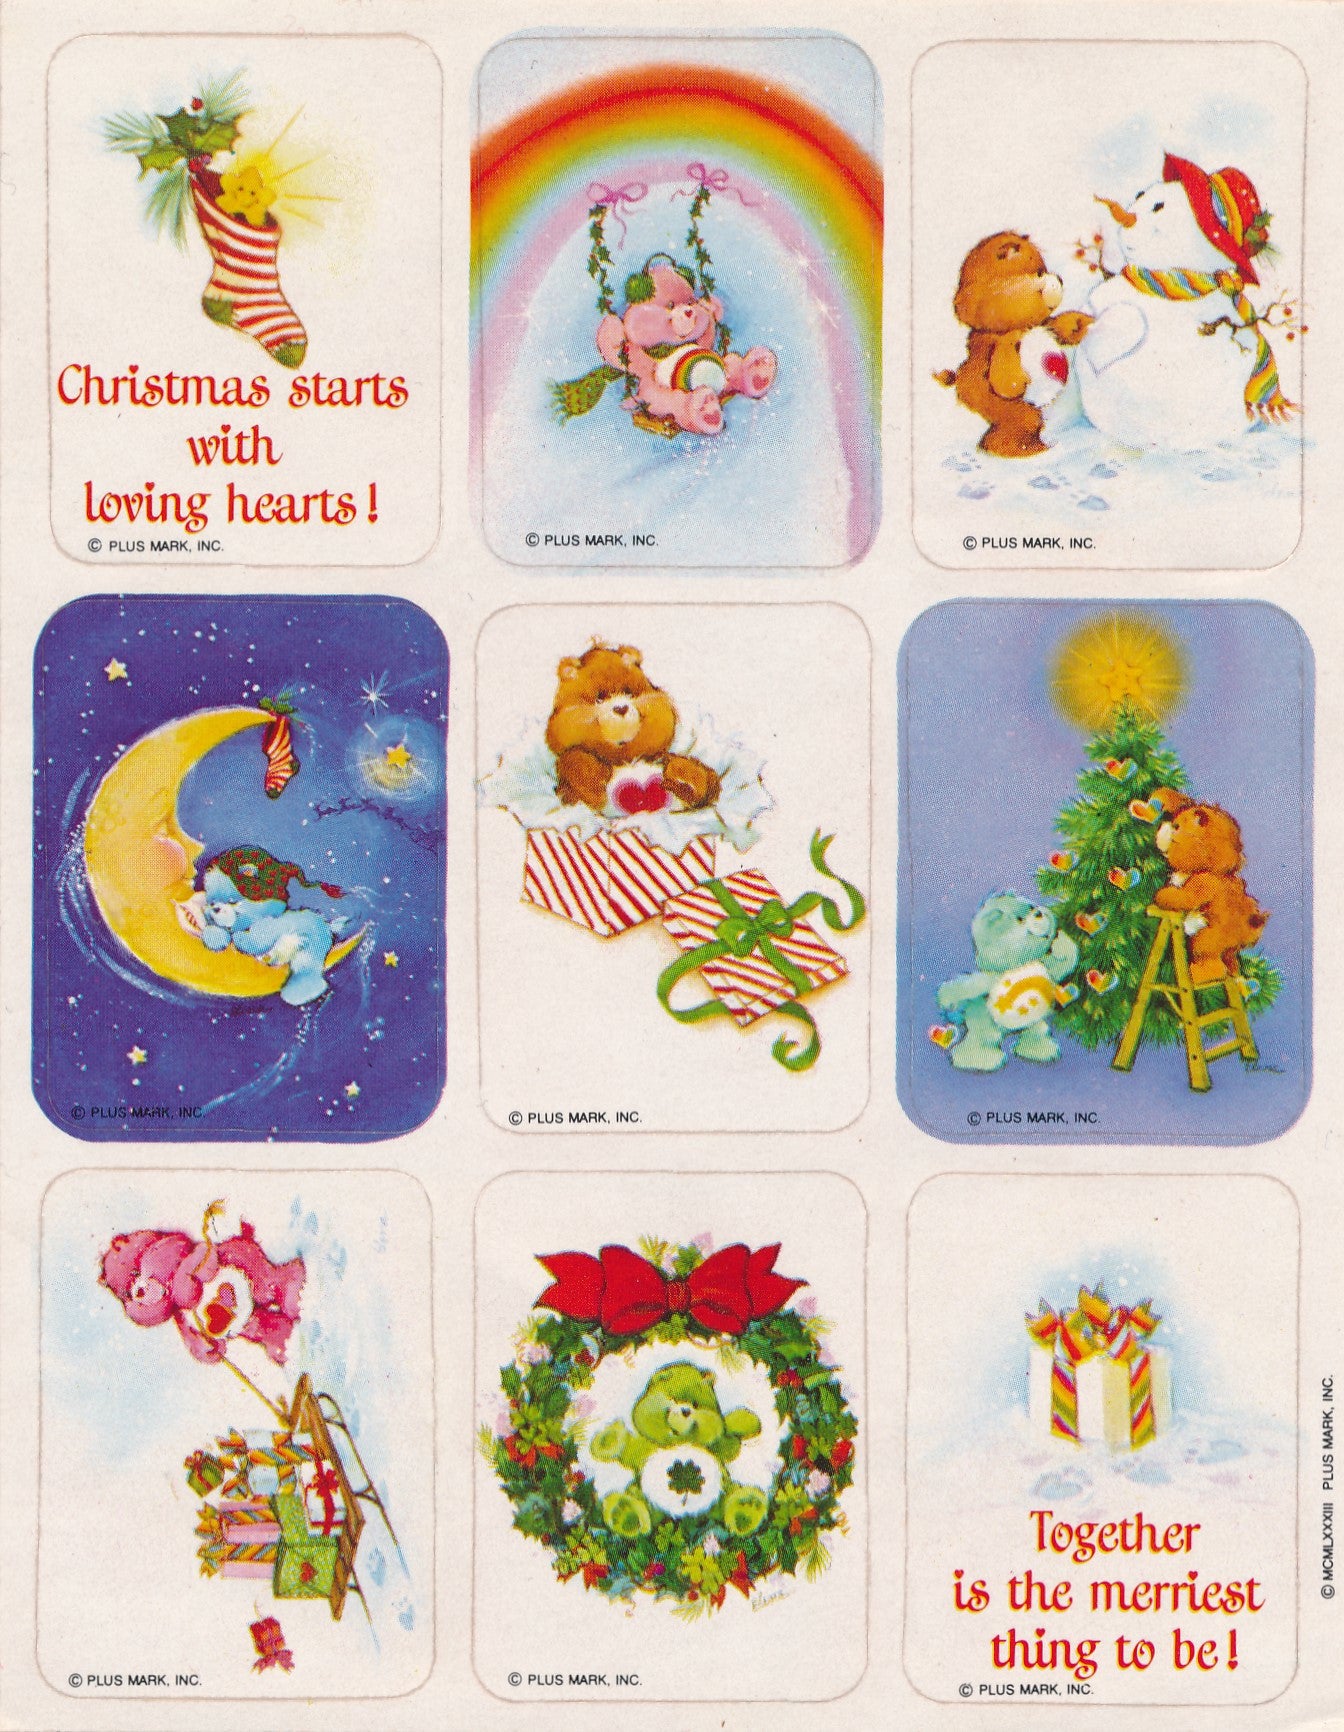 Little Twin Stars Heart Stickers Vintage 1983 Unused Sticker Sheet